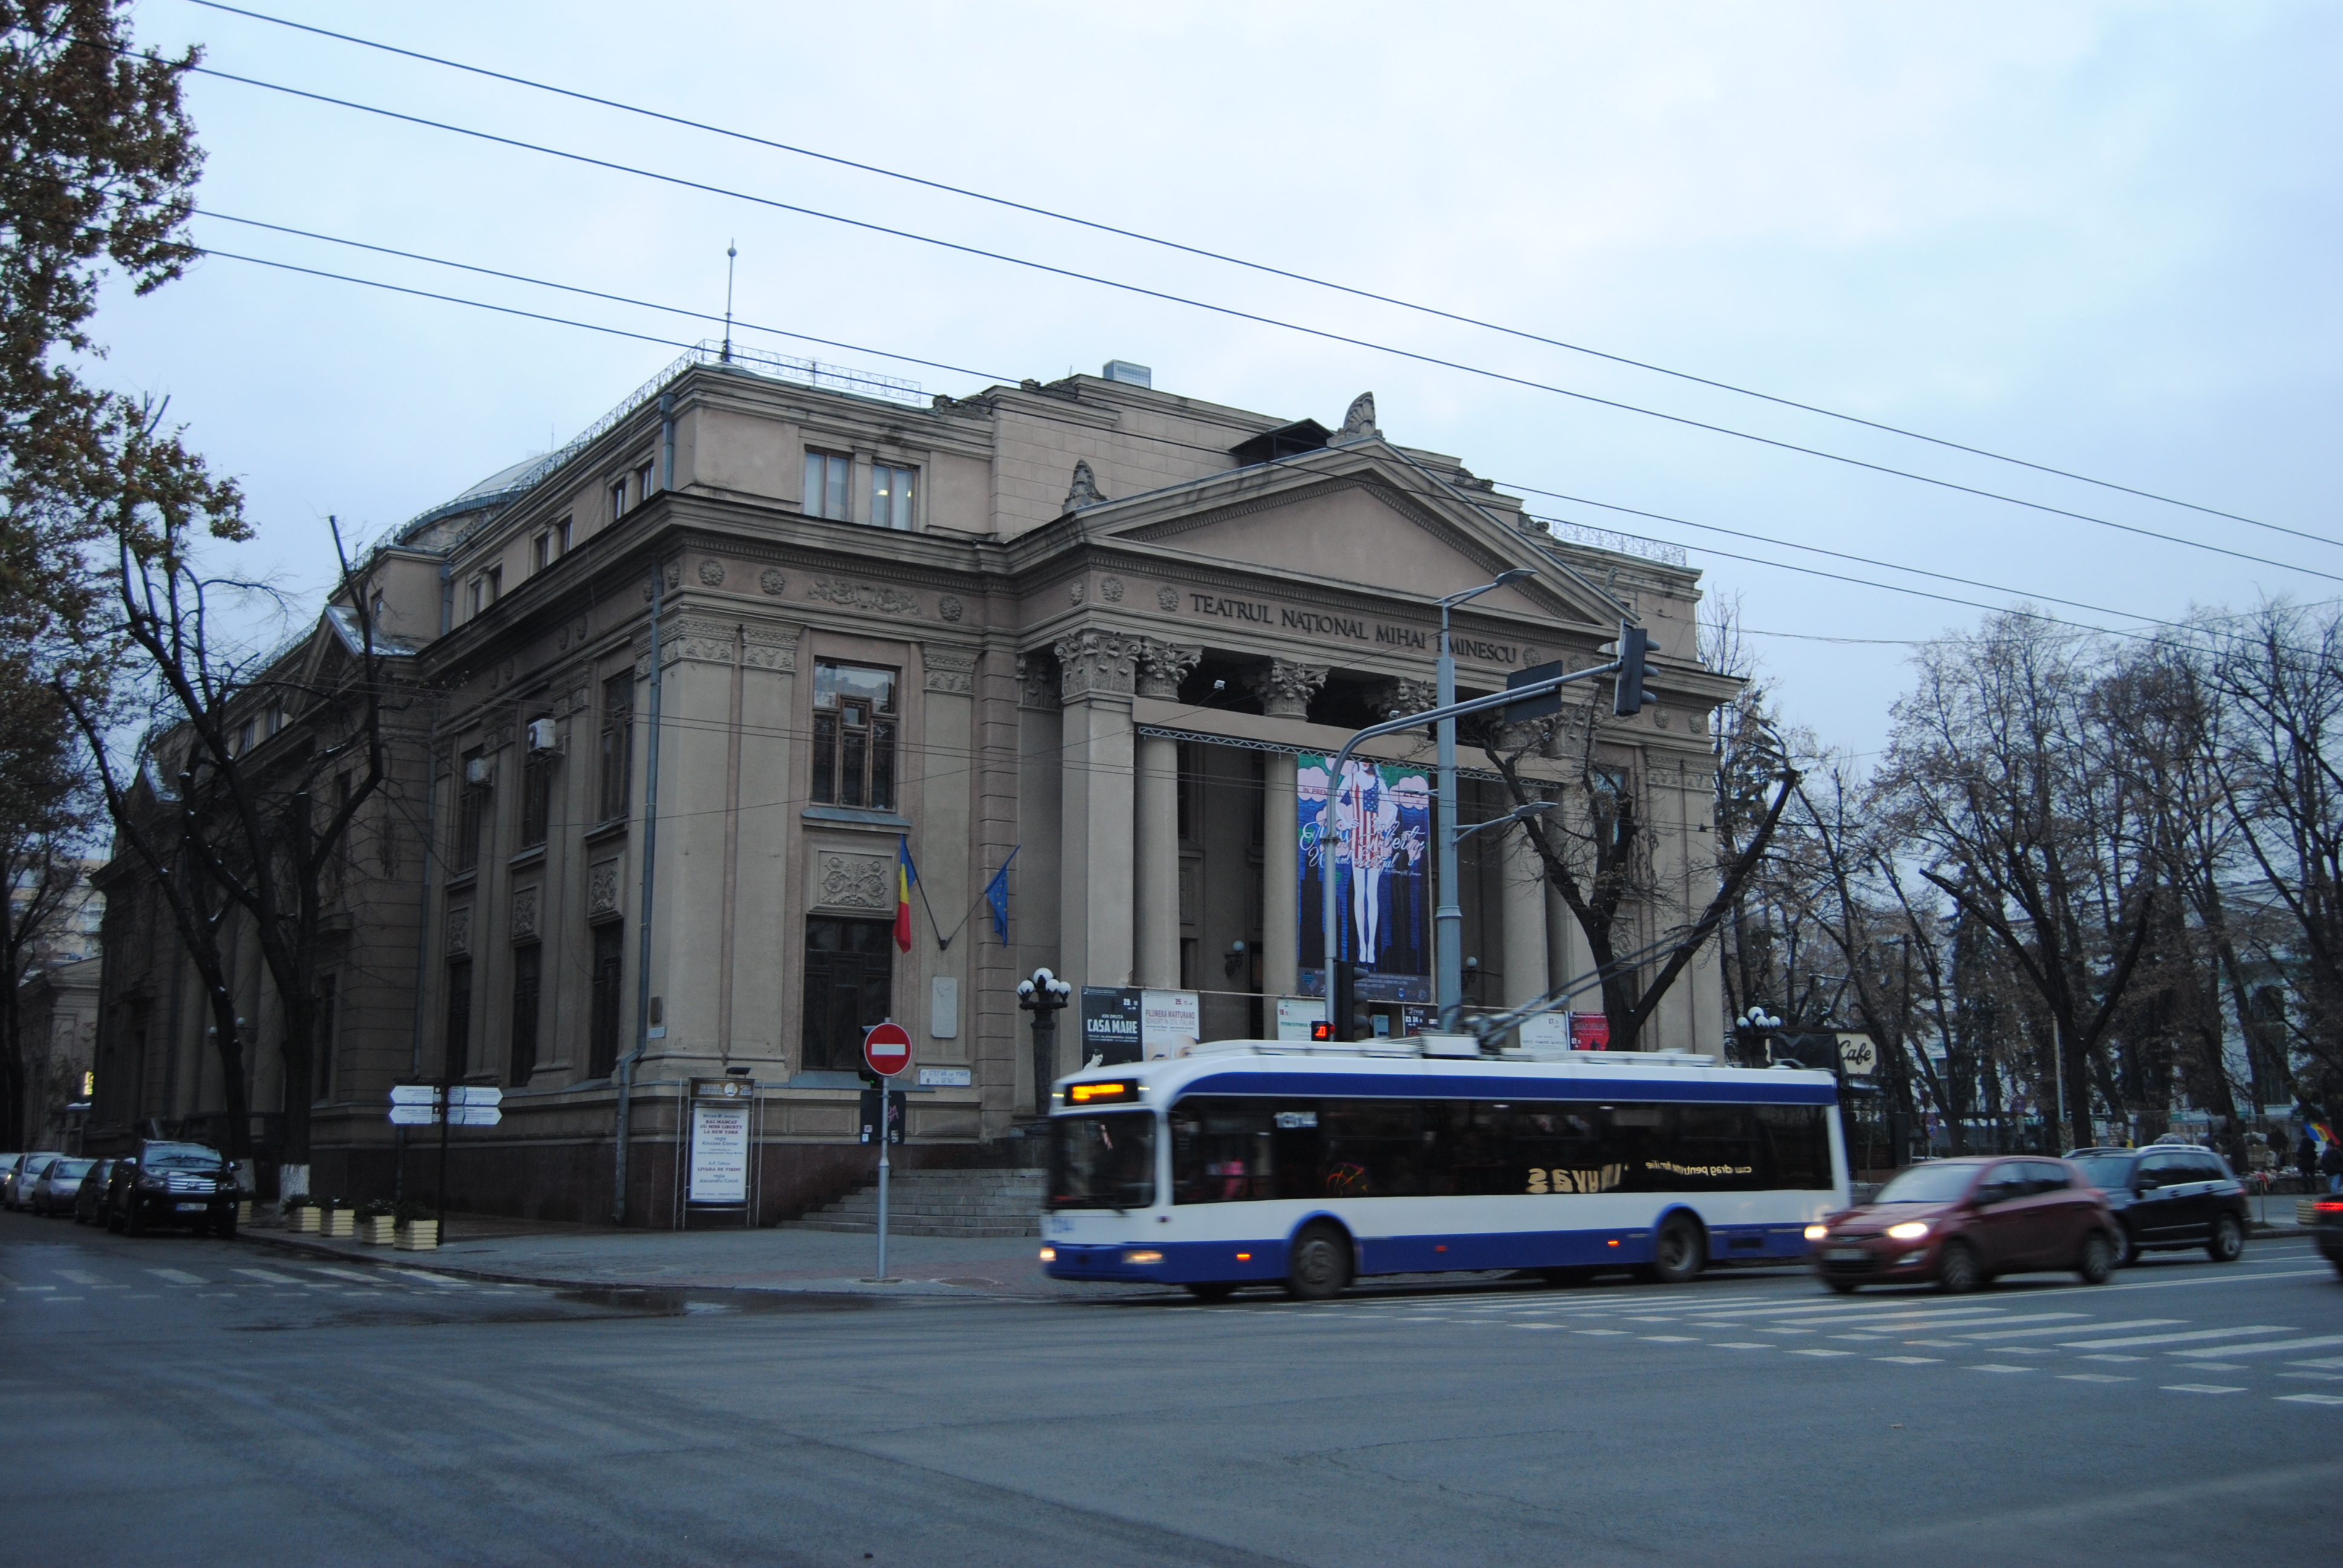 Teatro Mihai Eminescu